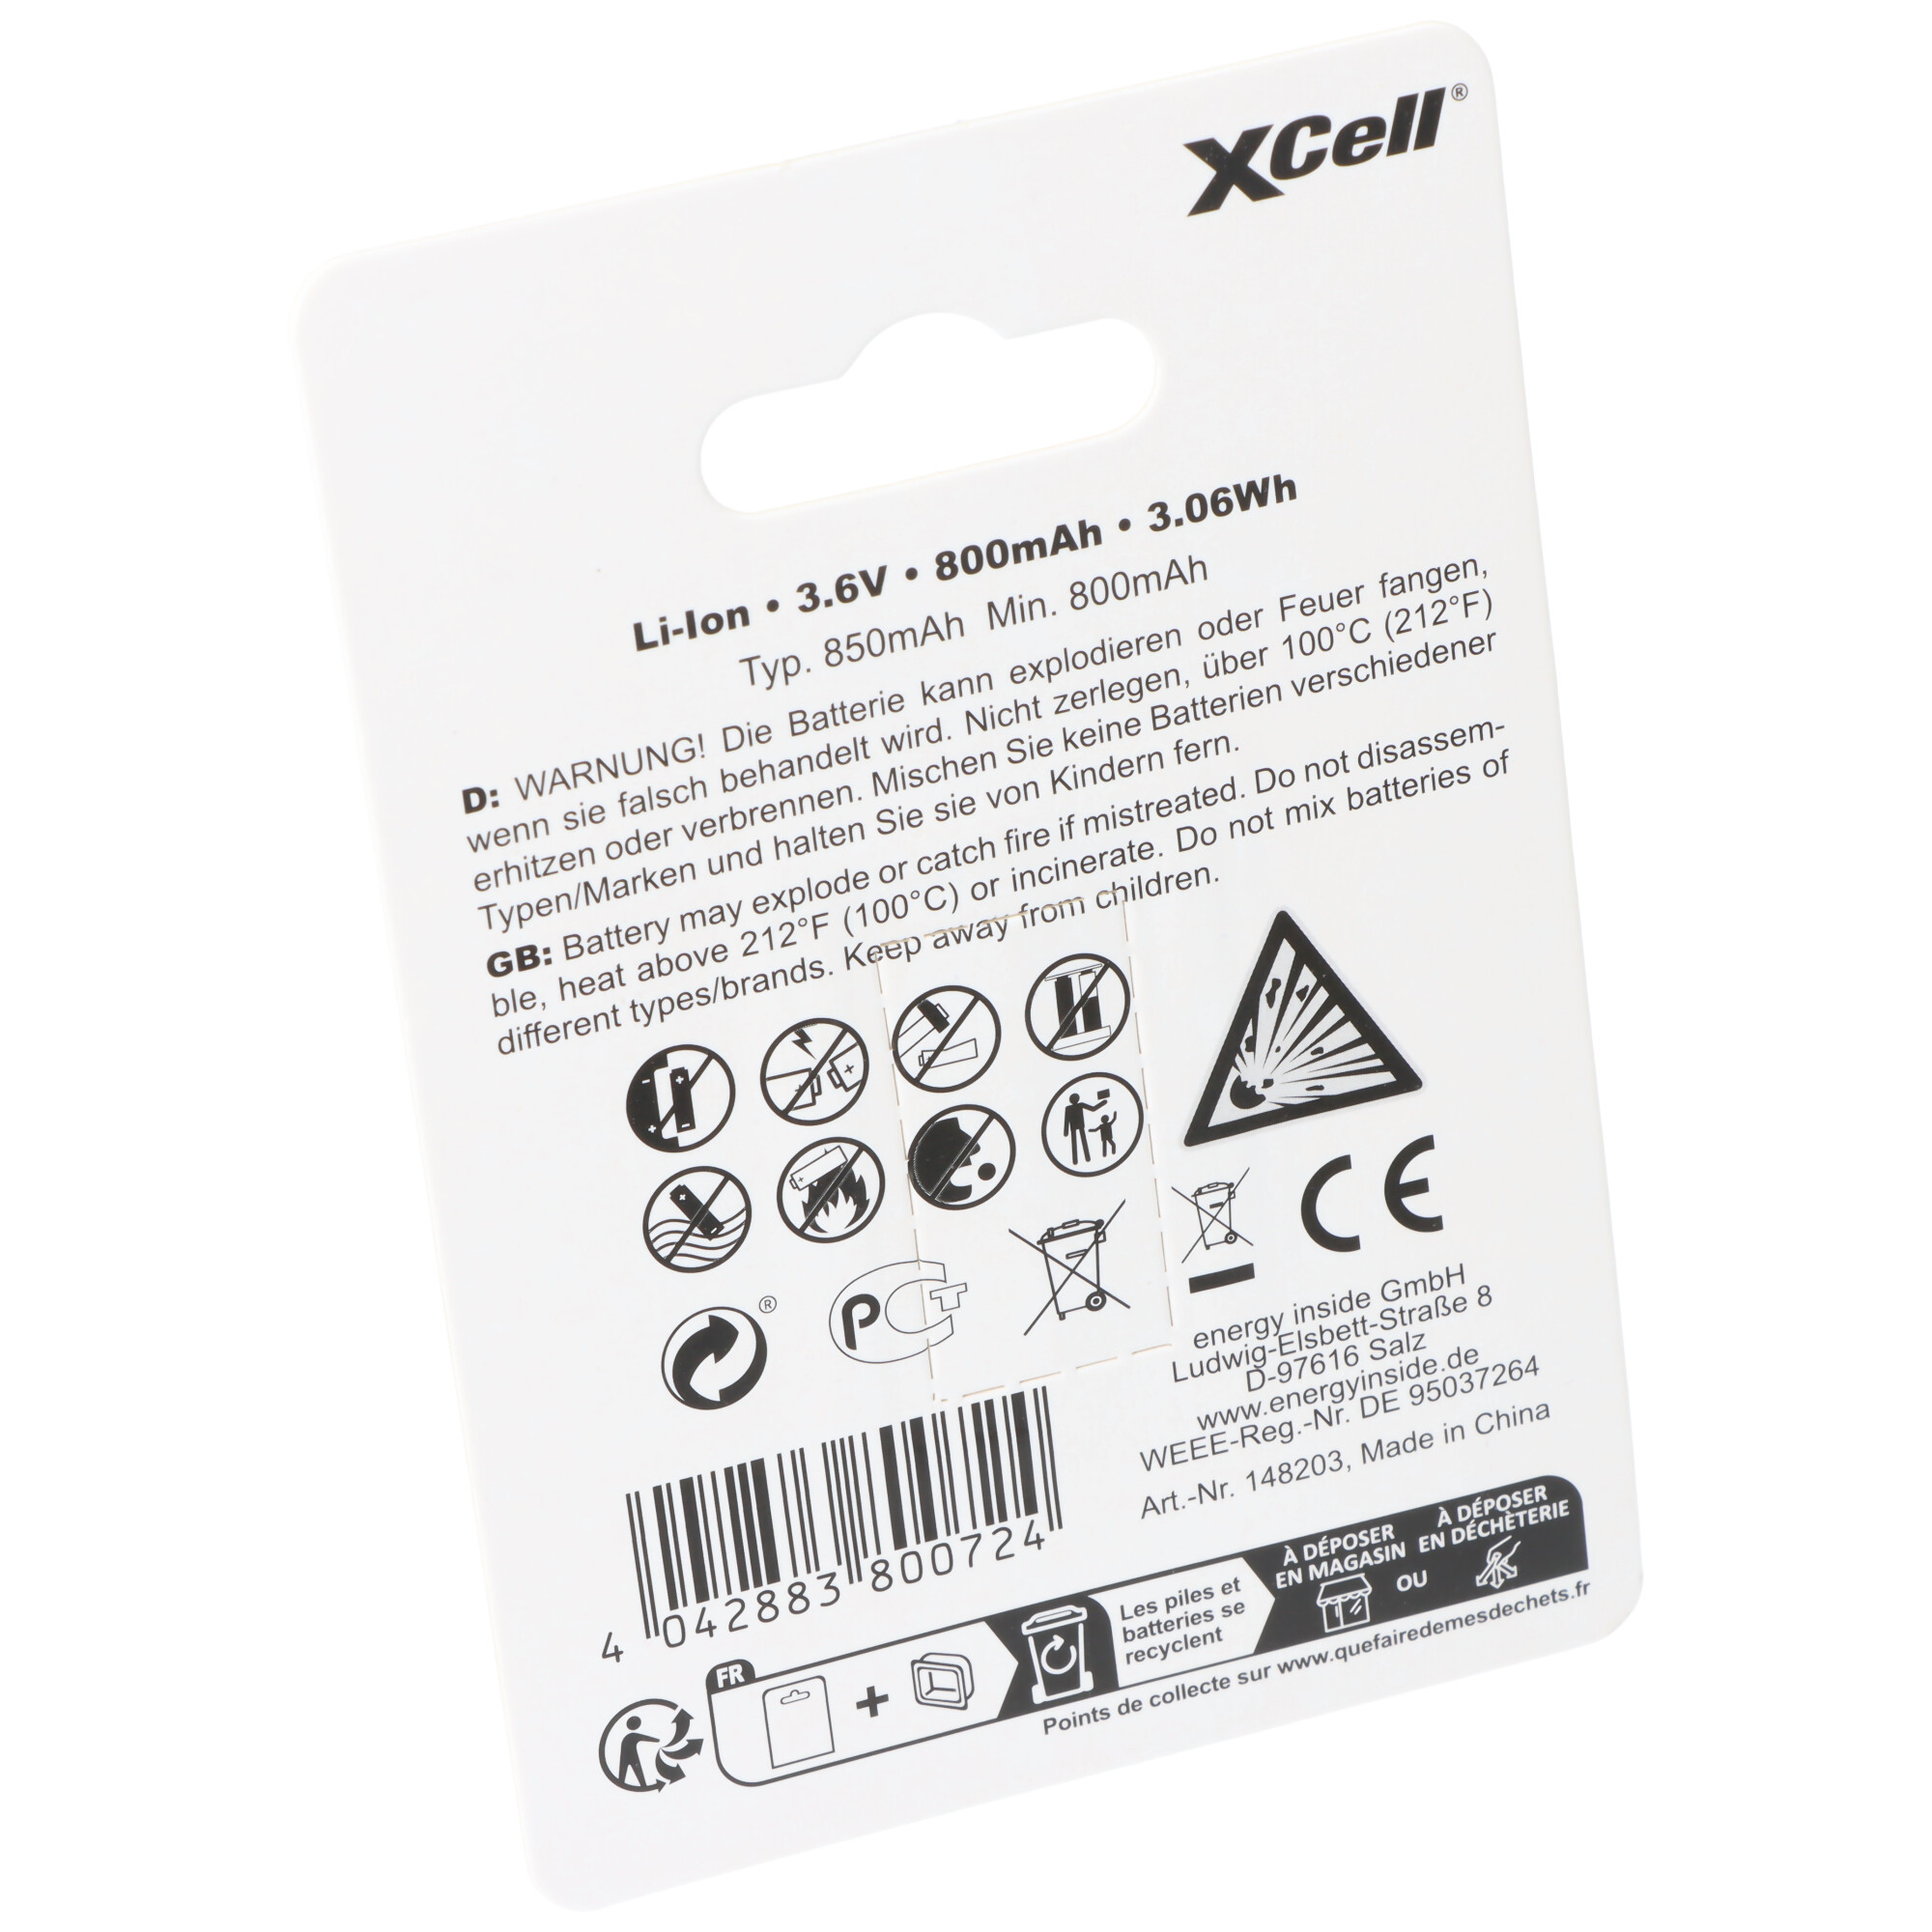 XCell Pro 16340 Li-Ion Akku CR123A geschützter Li-Ion Akku, mit USB-C Ladebuchse, min. 800mAh max. 850mAh, 3,6 Volt